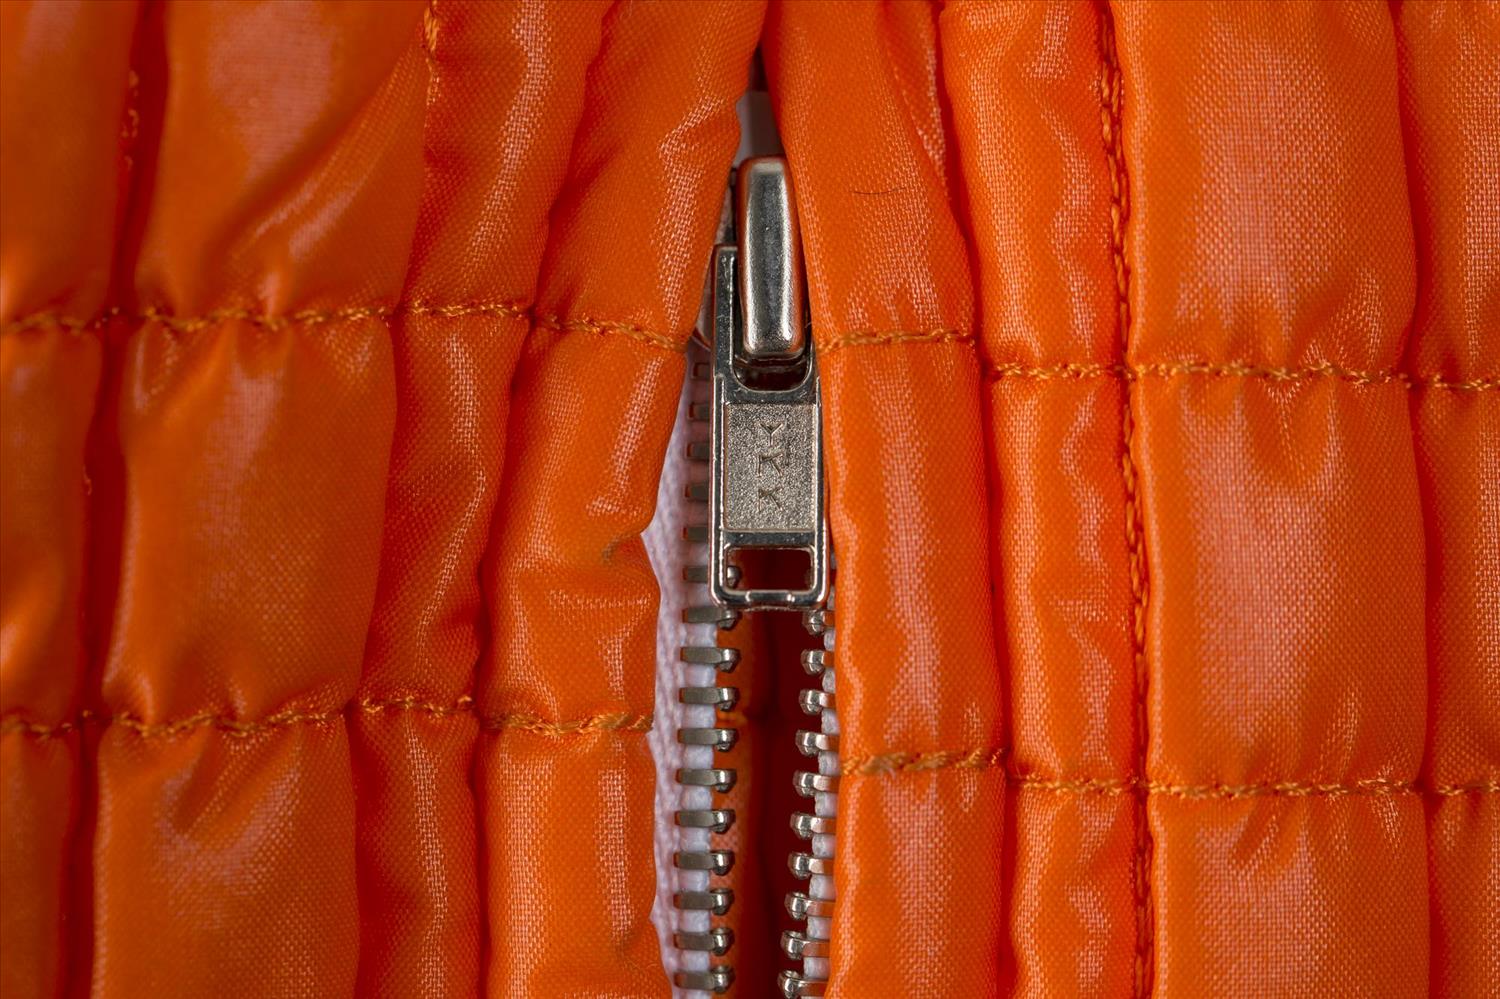 Detail of orange jacket belonging to Shirley Manson.